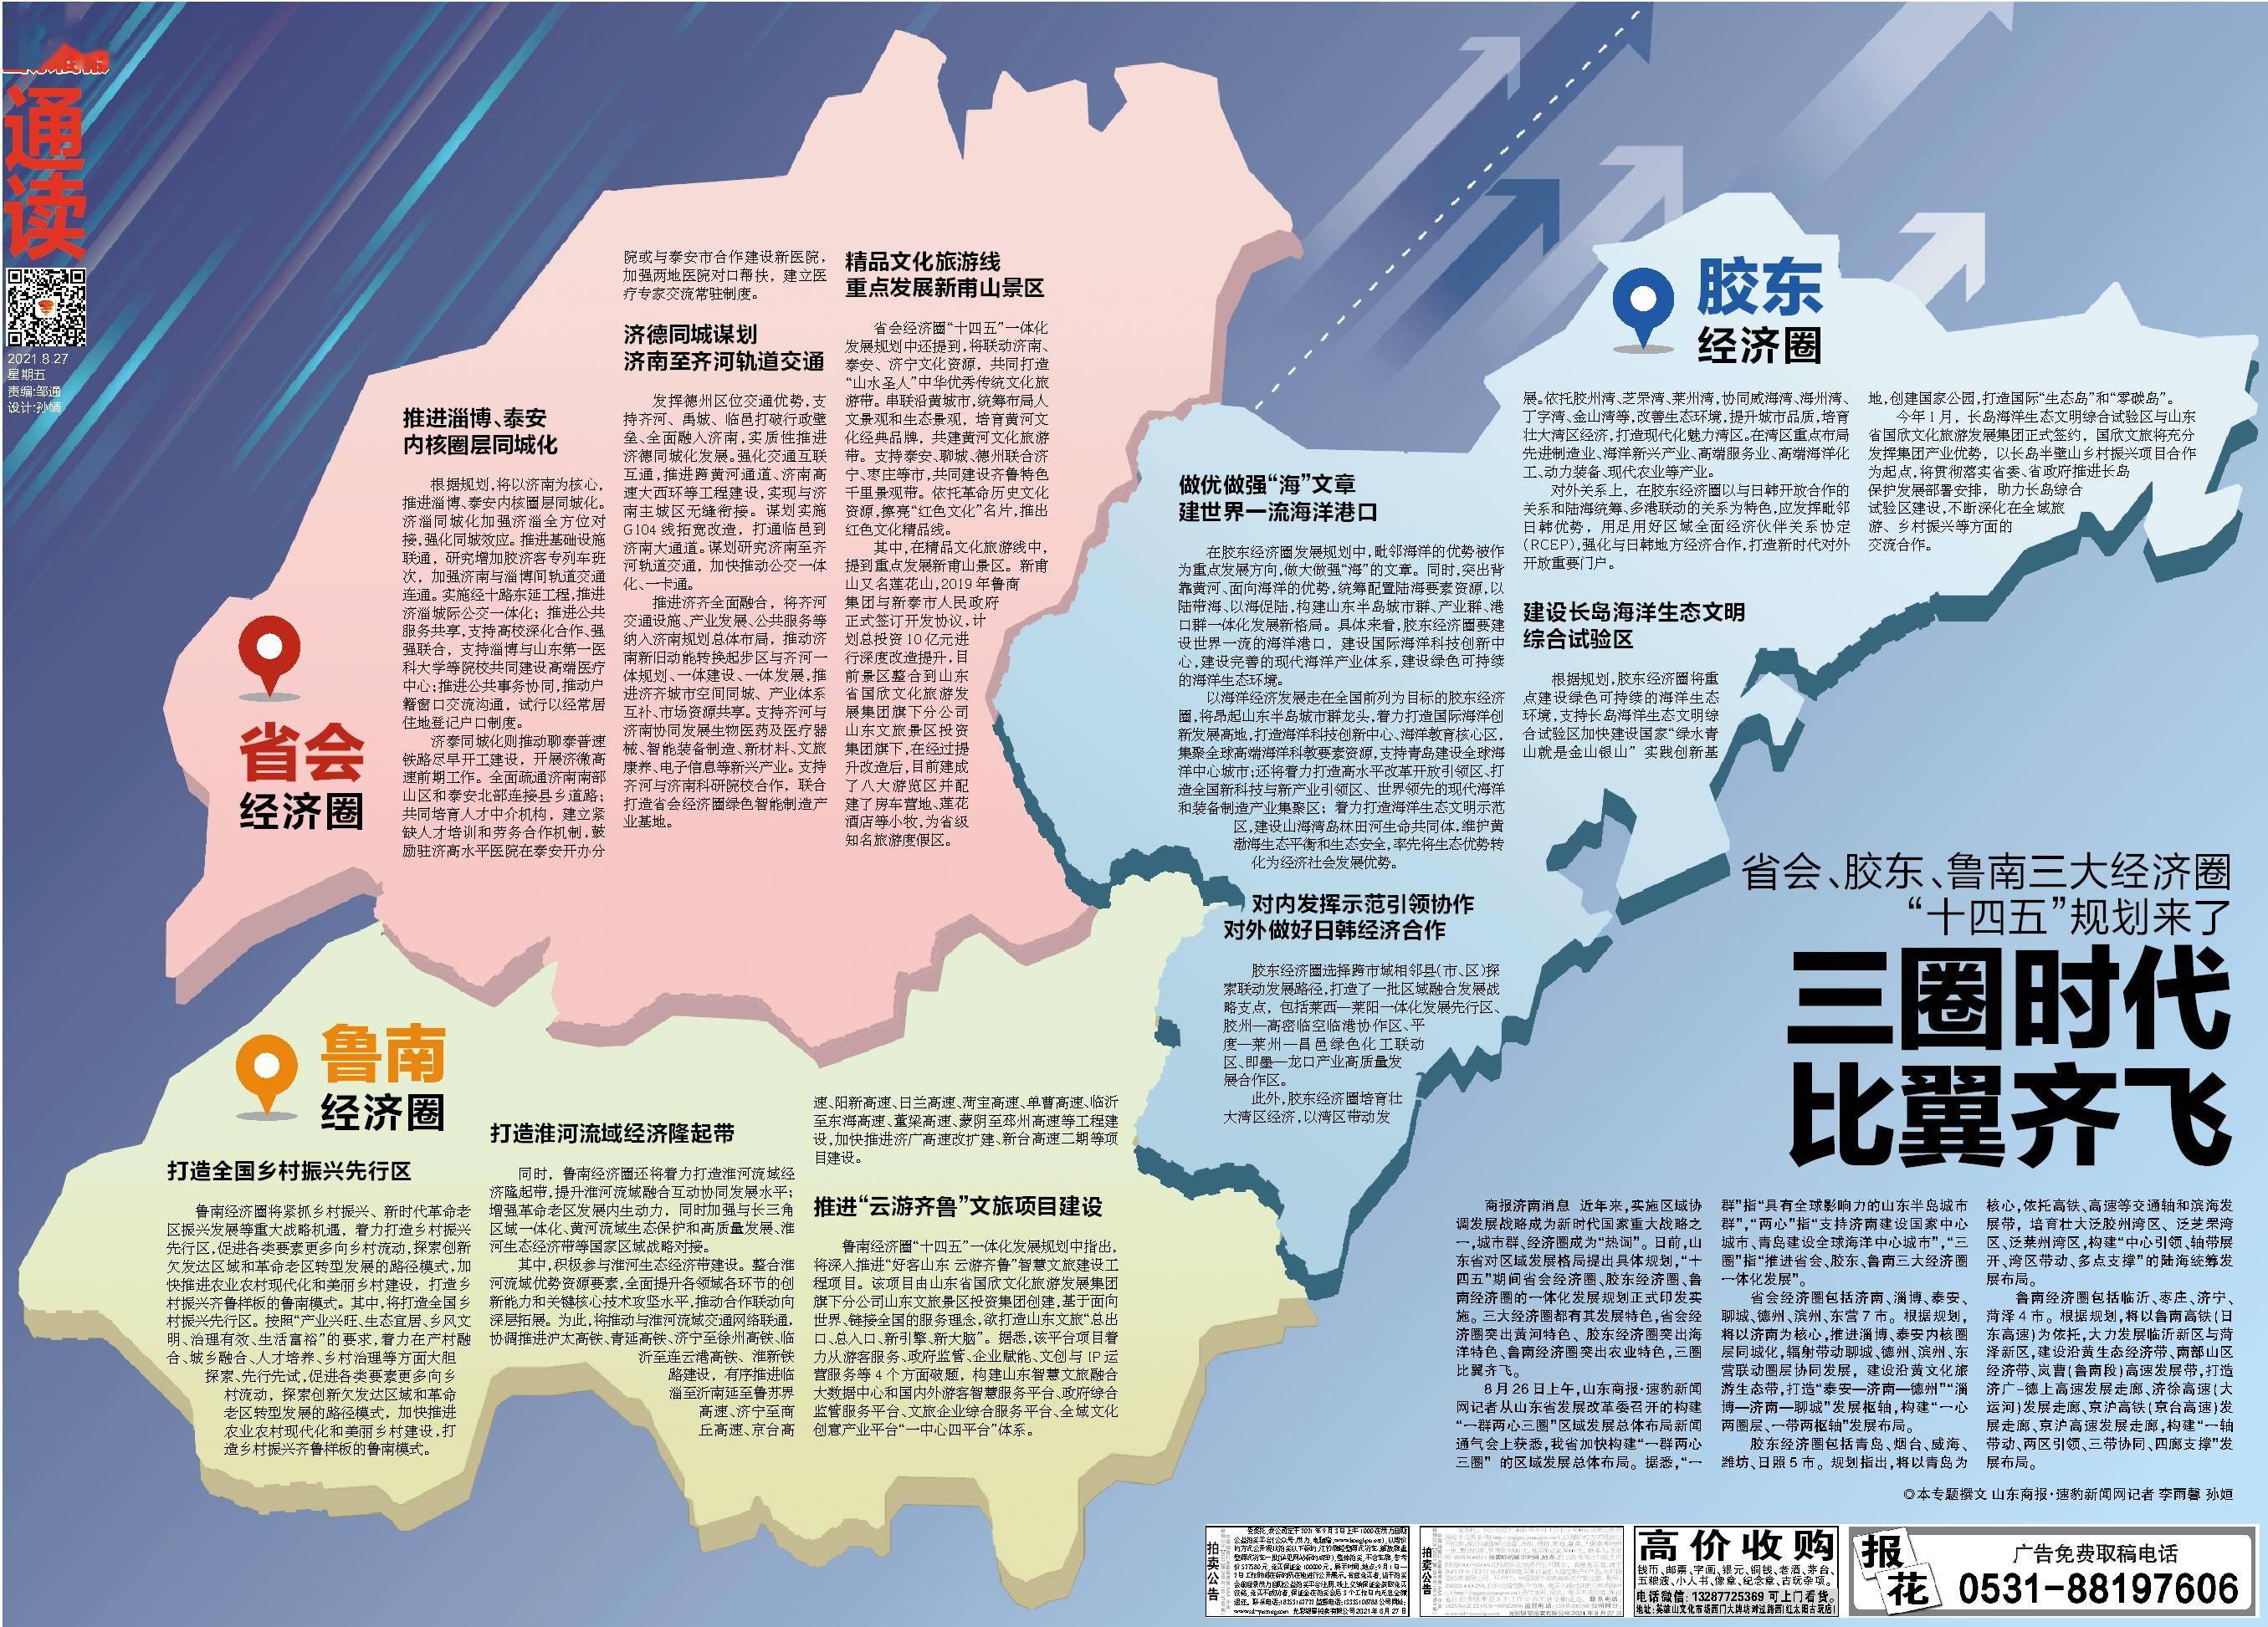 省会,胶东,鲁南三大经济圈"十四五"规划来了